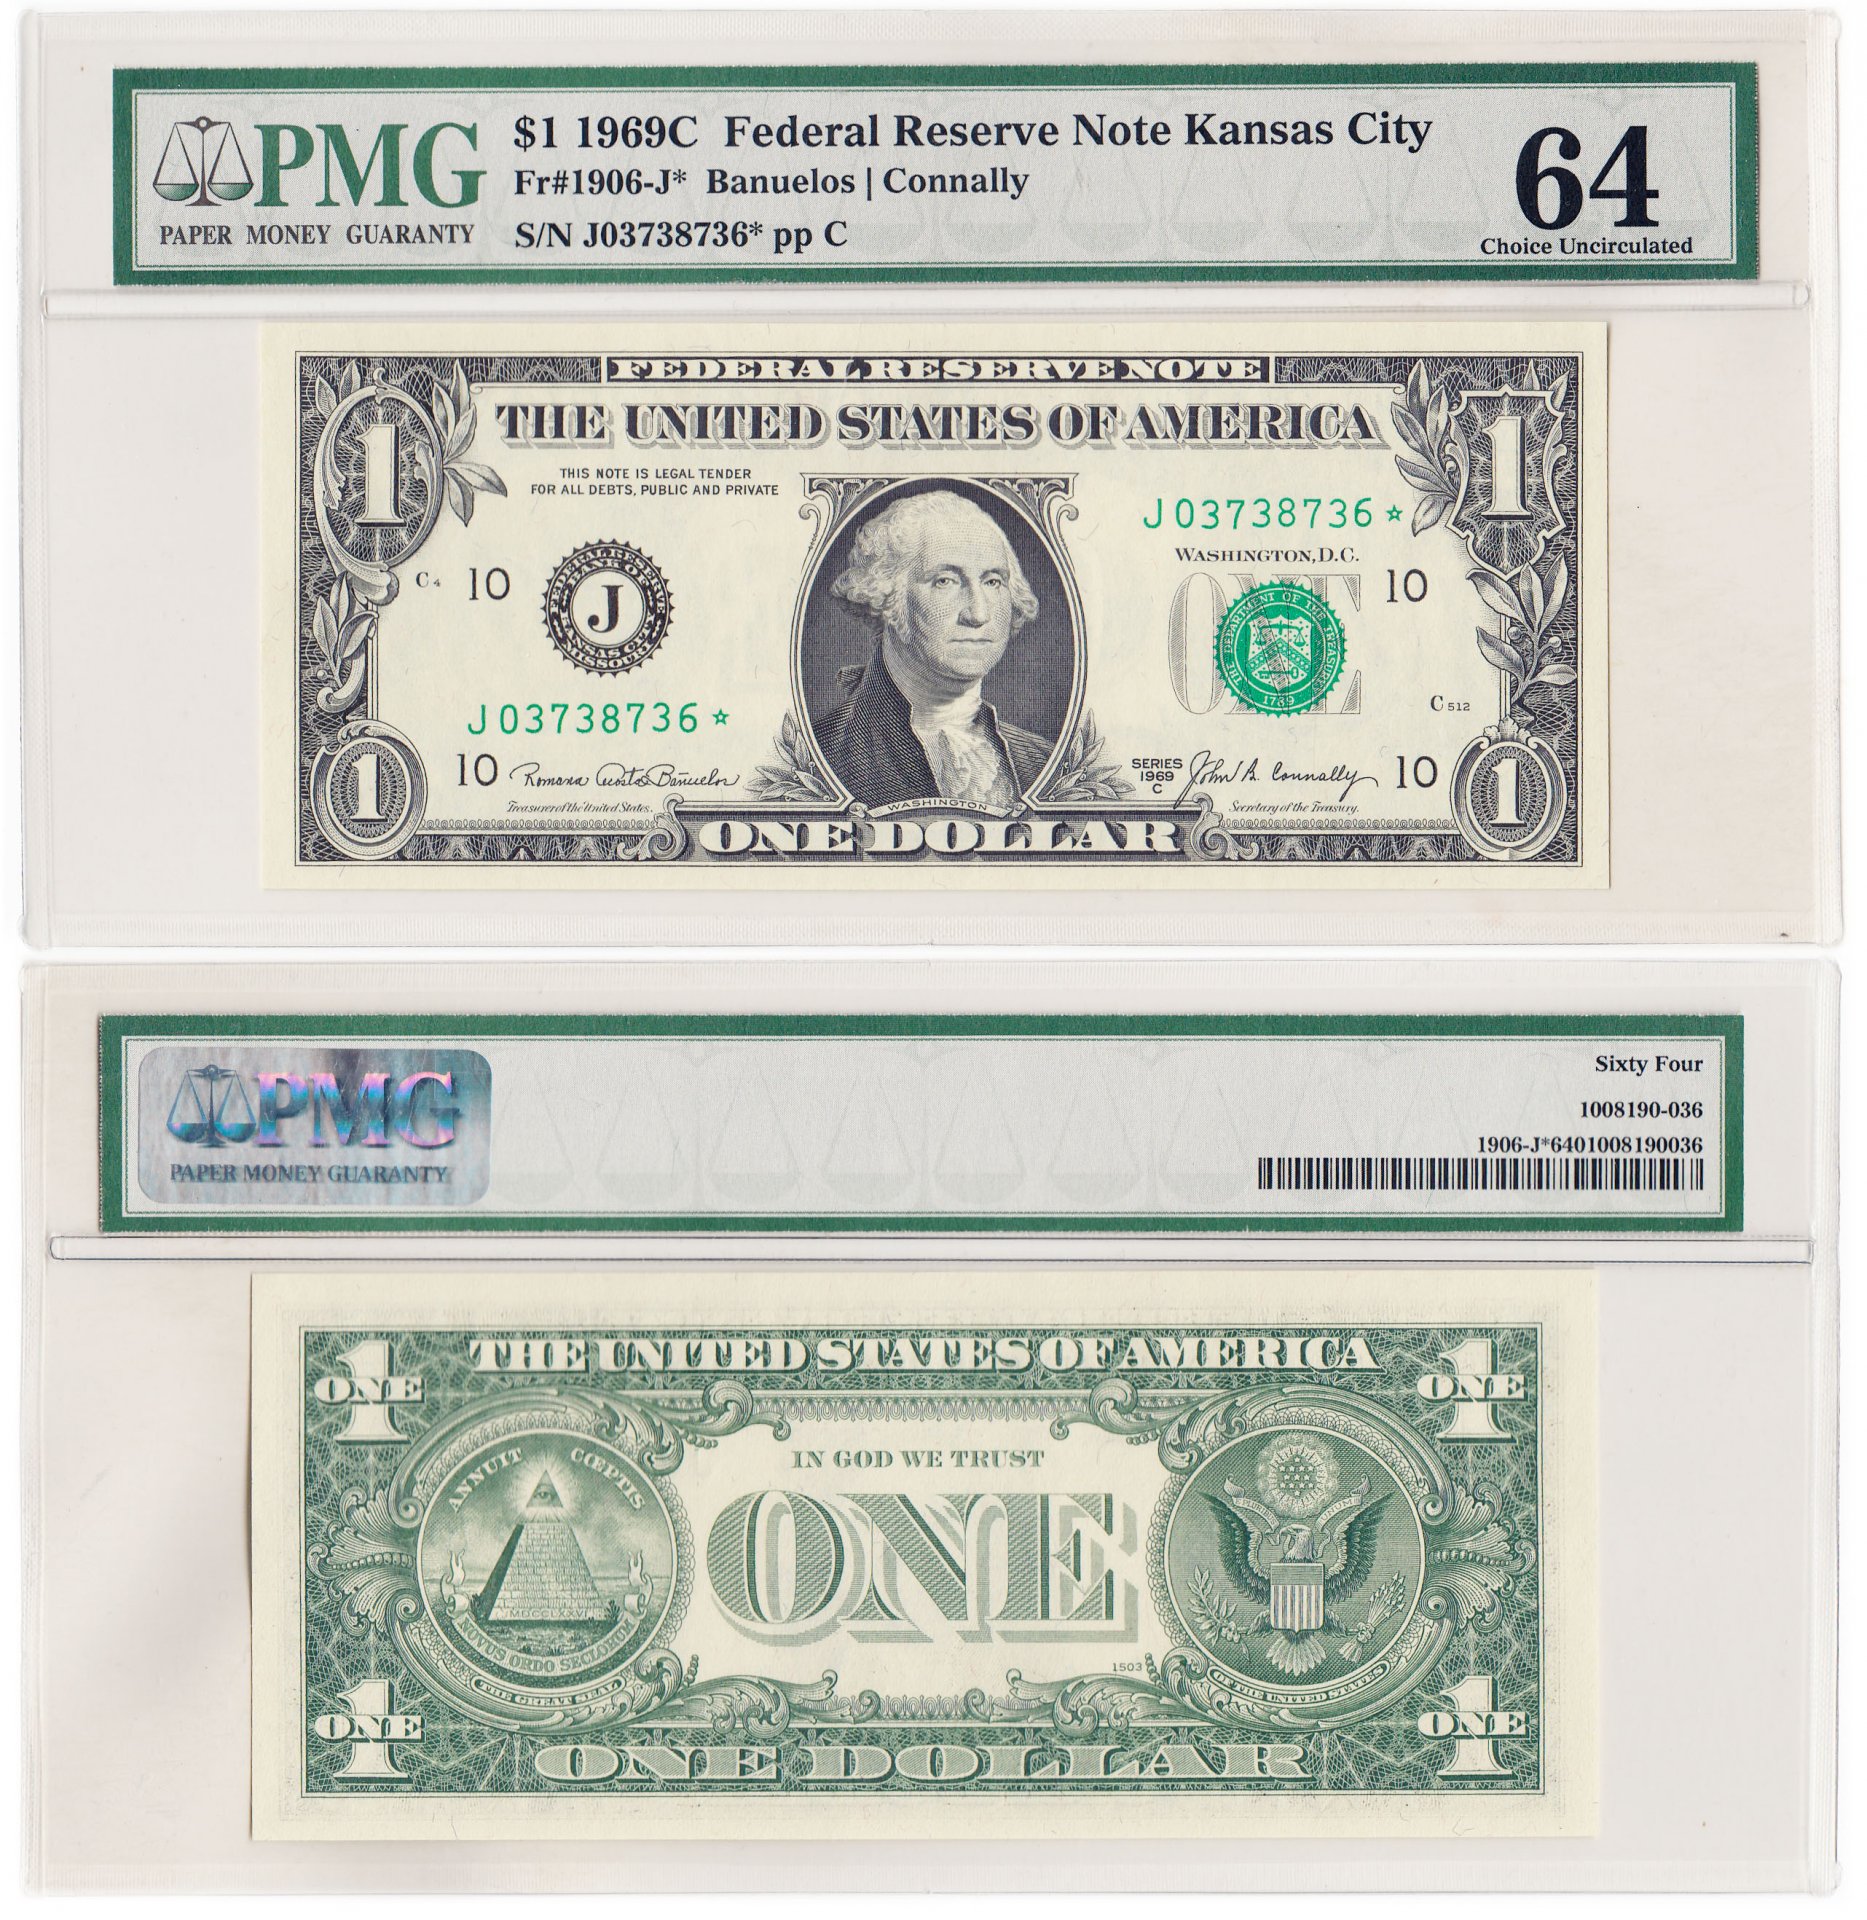 Доллар новые и старые купюры. Банкнота 1 доллар. Купюра 1 доллар США. Старые банкноты США. Старые купюры долларов.